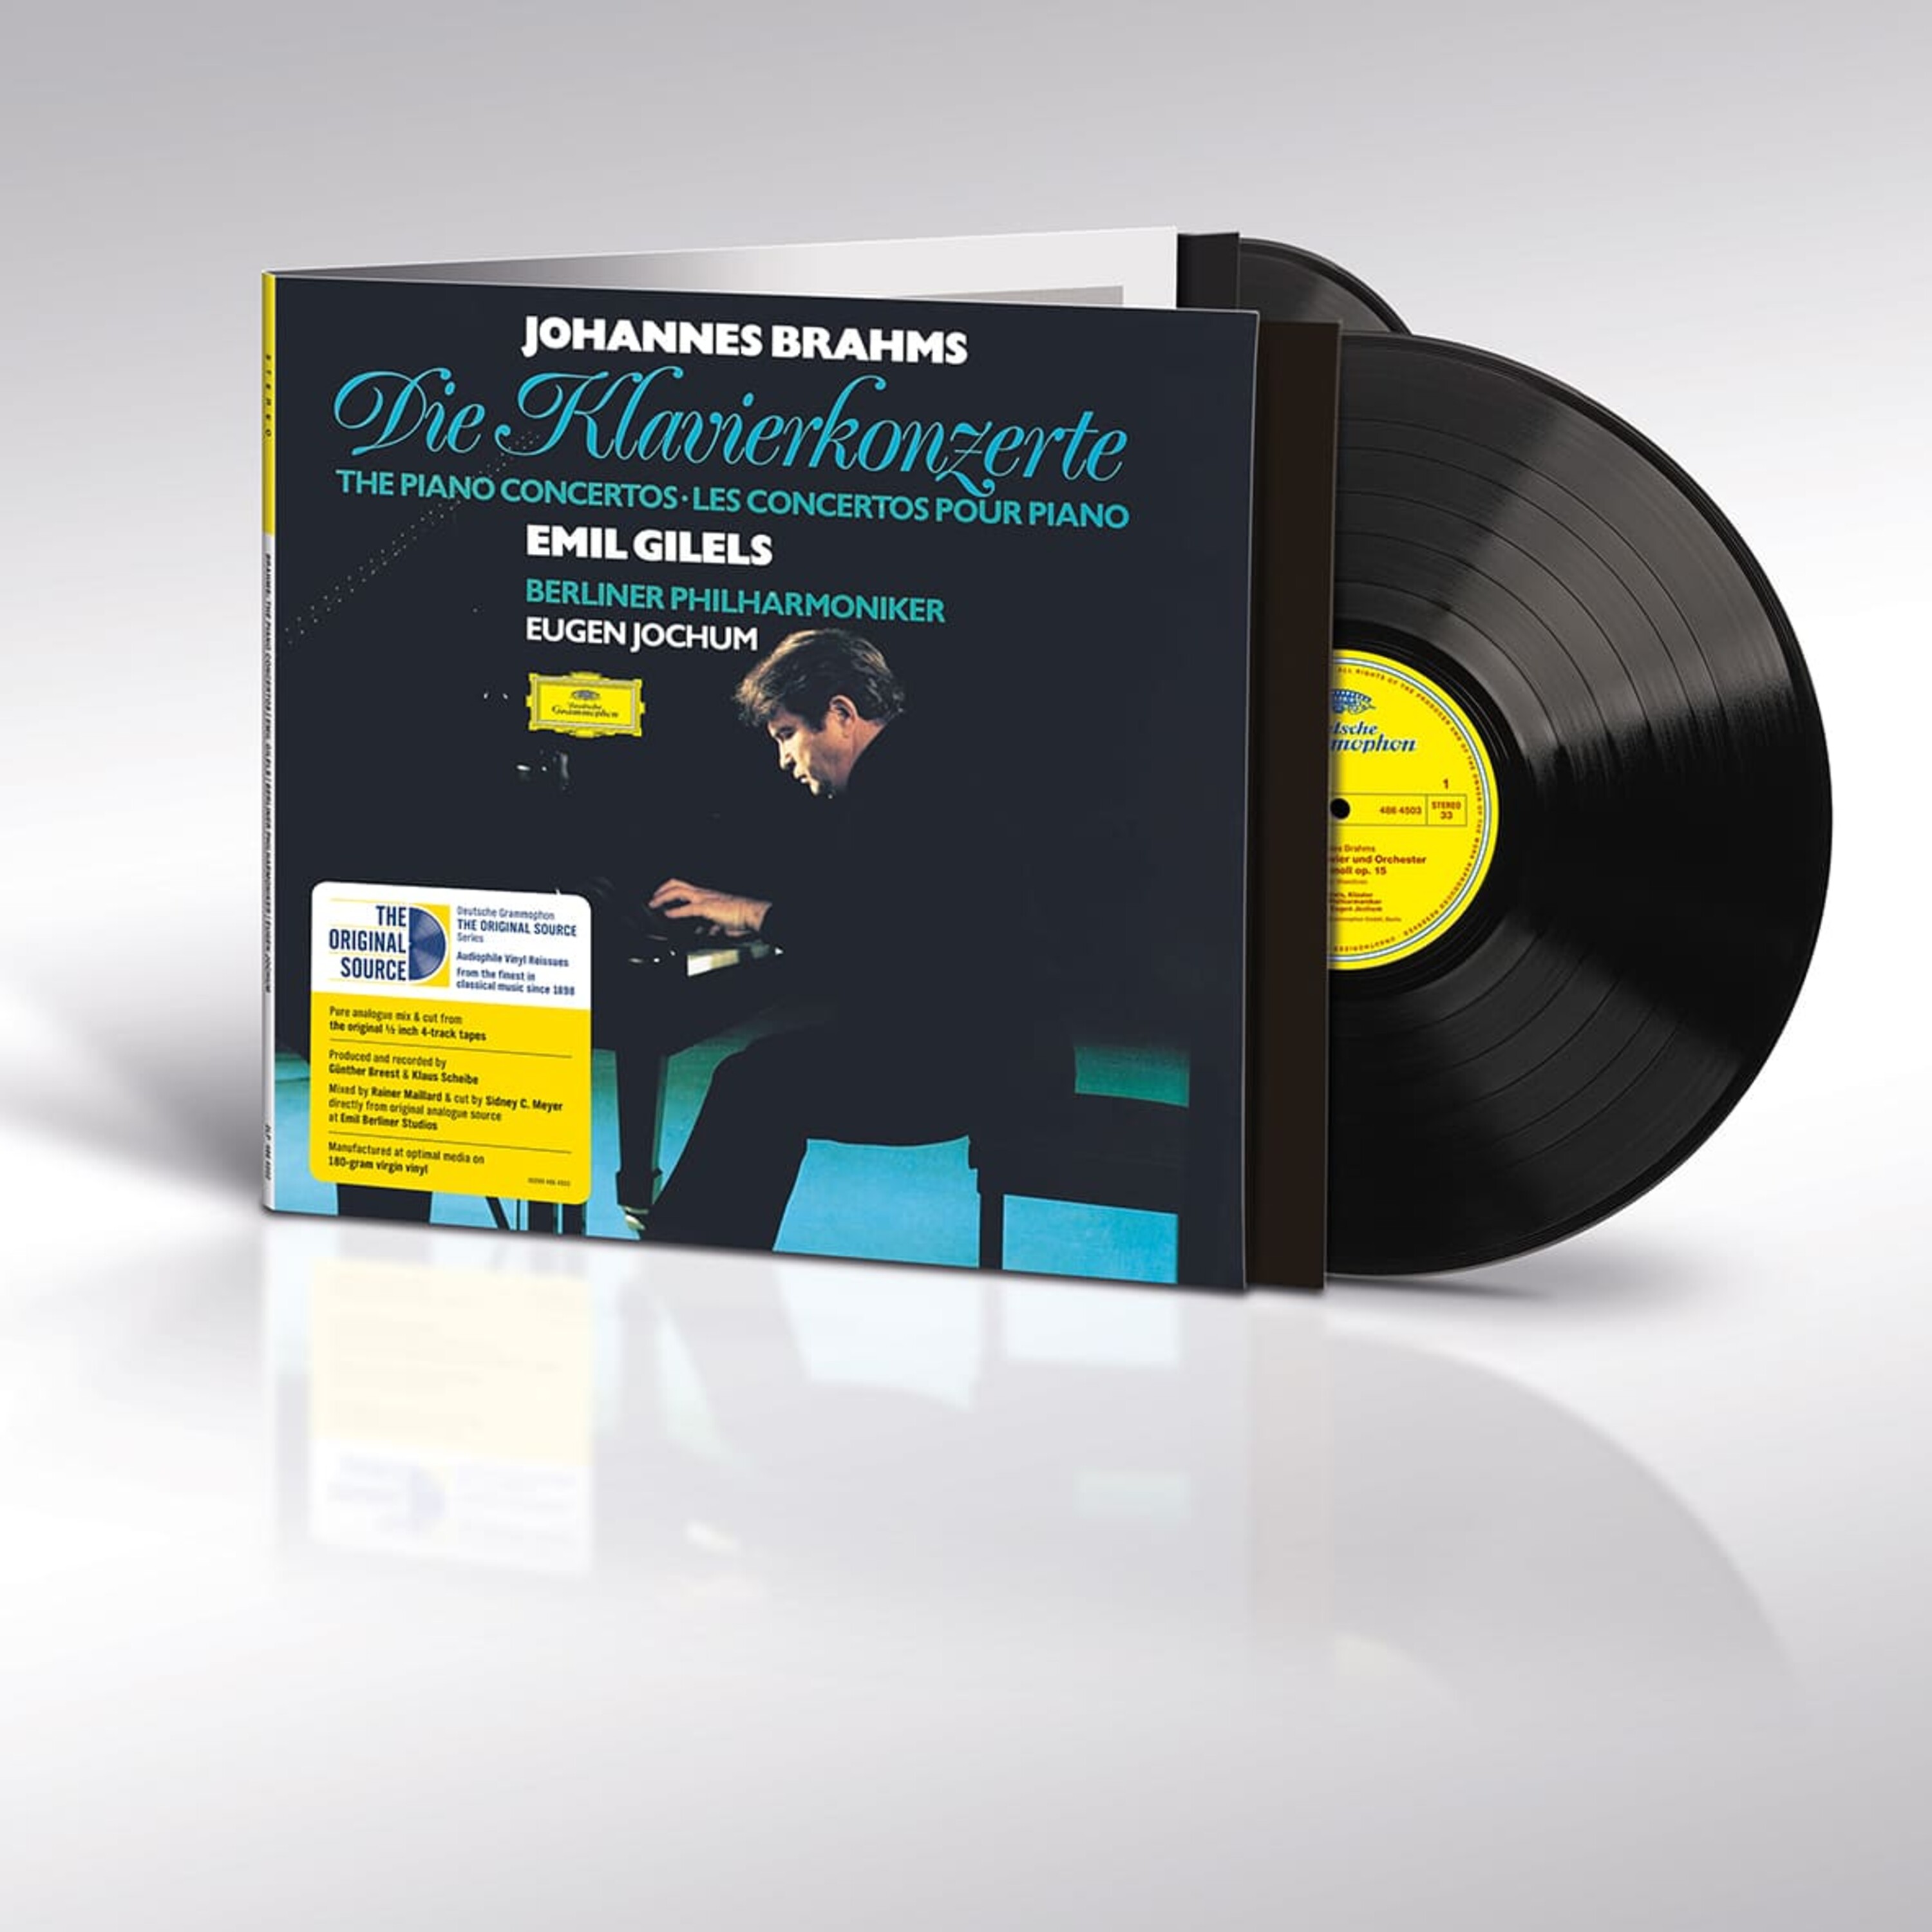 Rewriting History: Deutsche Grammophon's Groundbreaking “Original